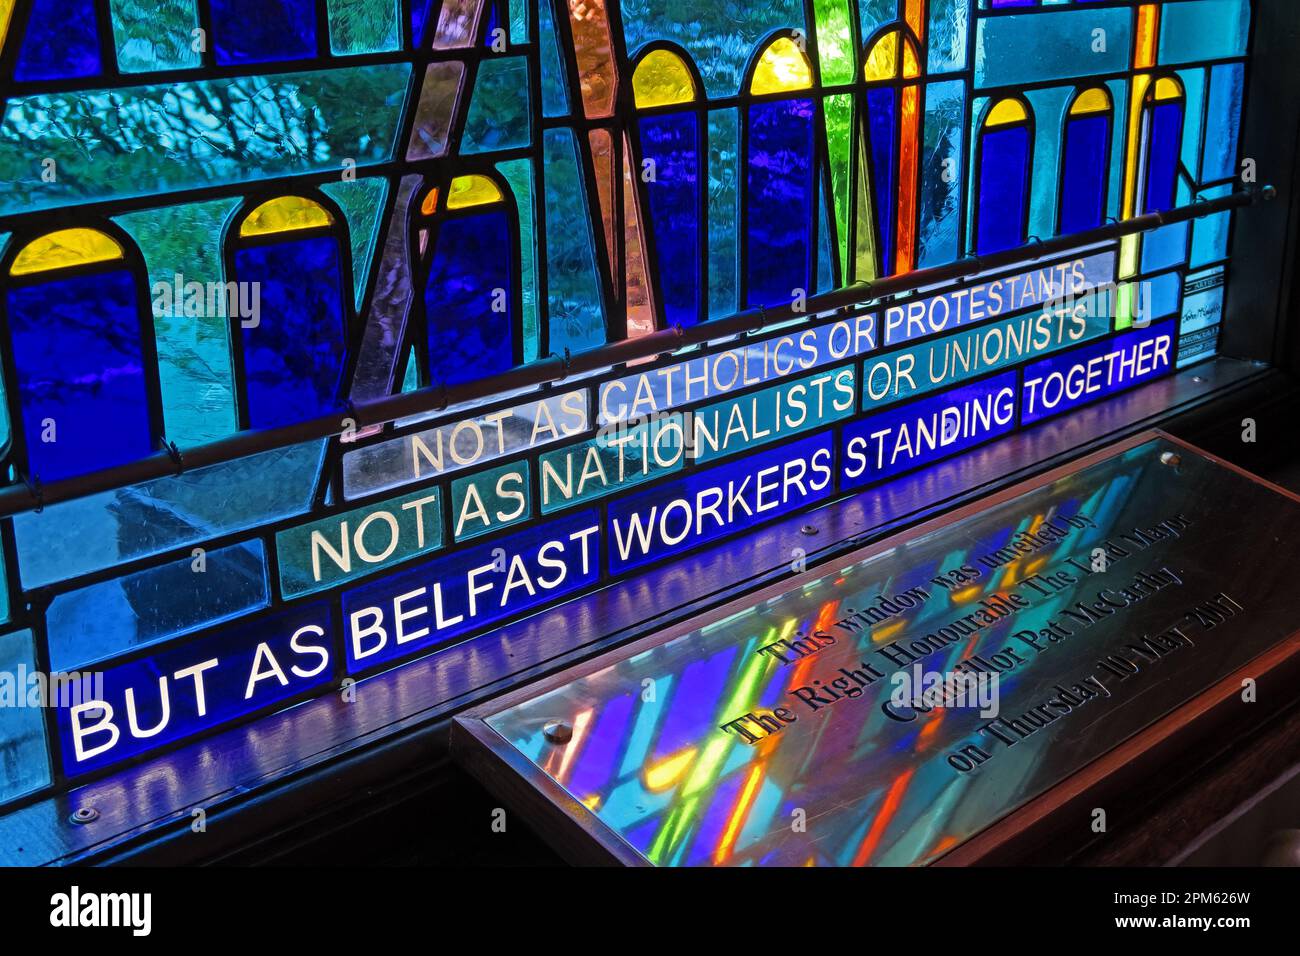 Les travailleurs de Belfast debout ensemble à la fenêtre, à l'hôtel de ville de Belfast, à Donegall Square North, à Belfast, à Antrim, en Irlande du Nord, ROYAUME-UNI, BT1 5GS Banque D'Images